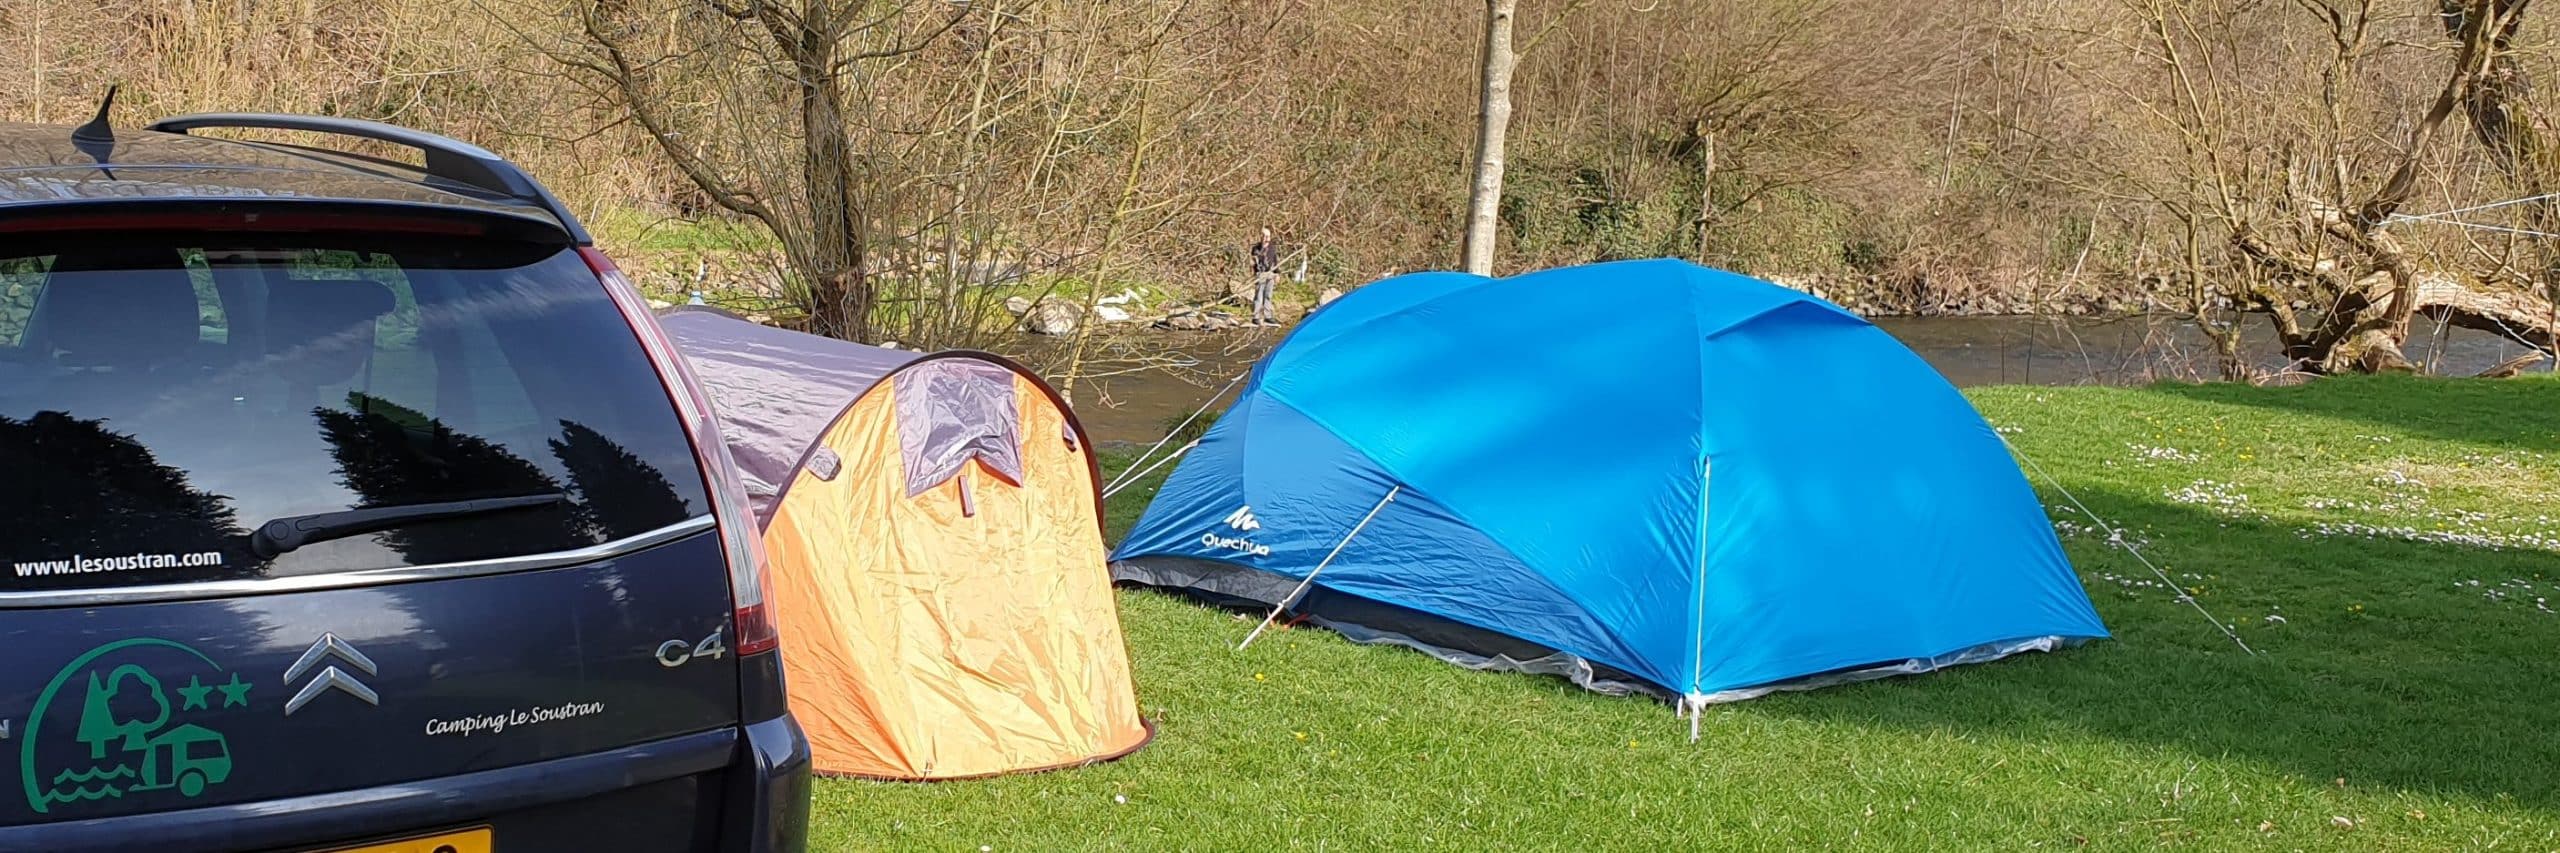 blog april 2019 Camping Correze